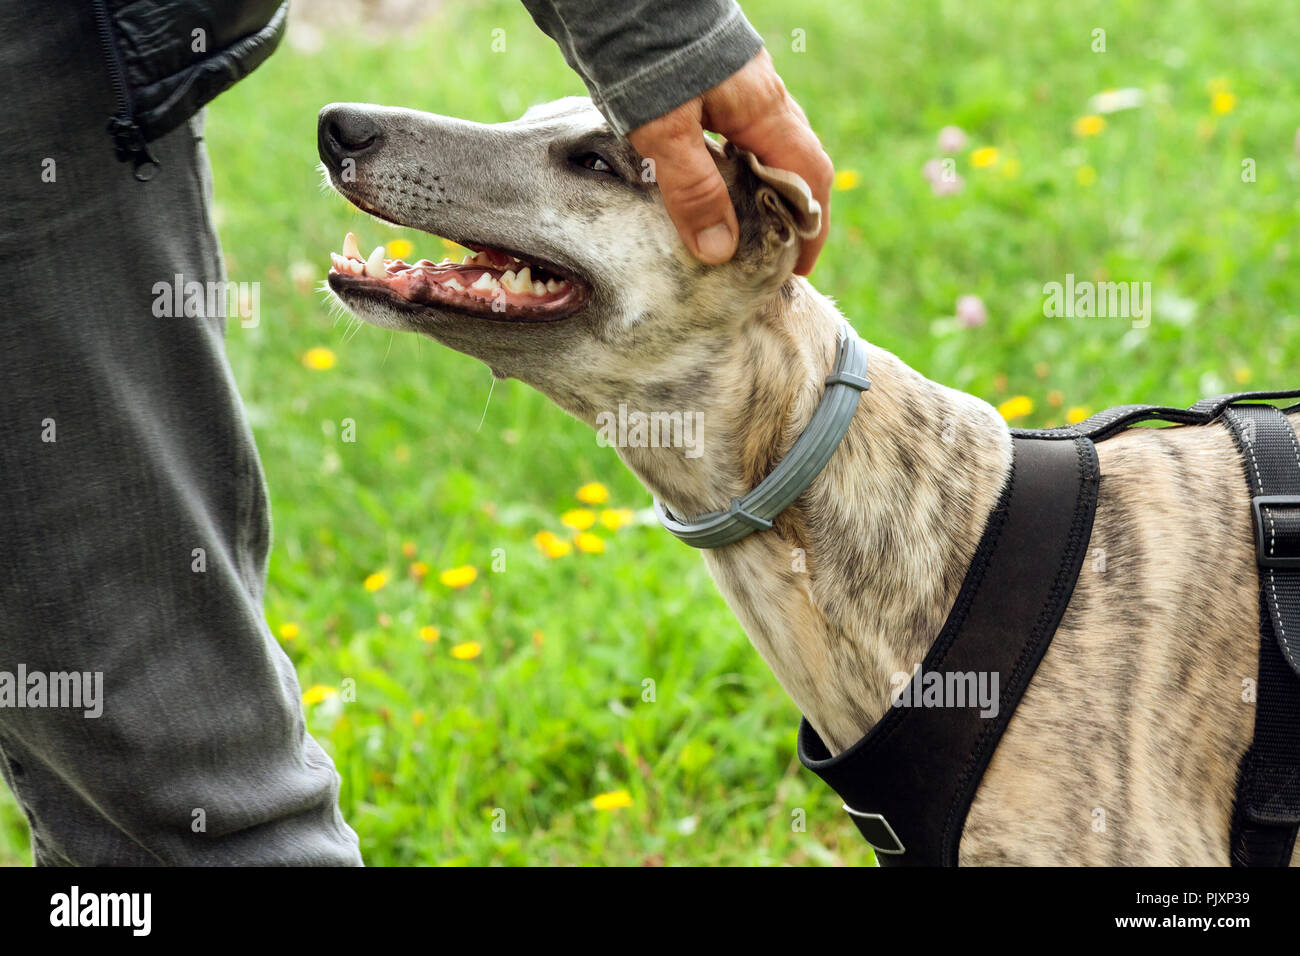 Una razza Whippet cane sta accanto a un uomo in grigio jeans e una giacca nera, close-up di un animale il muso, un uomo colpi alla testa di un animale domestico, beige Foto Stock